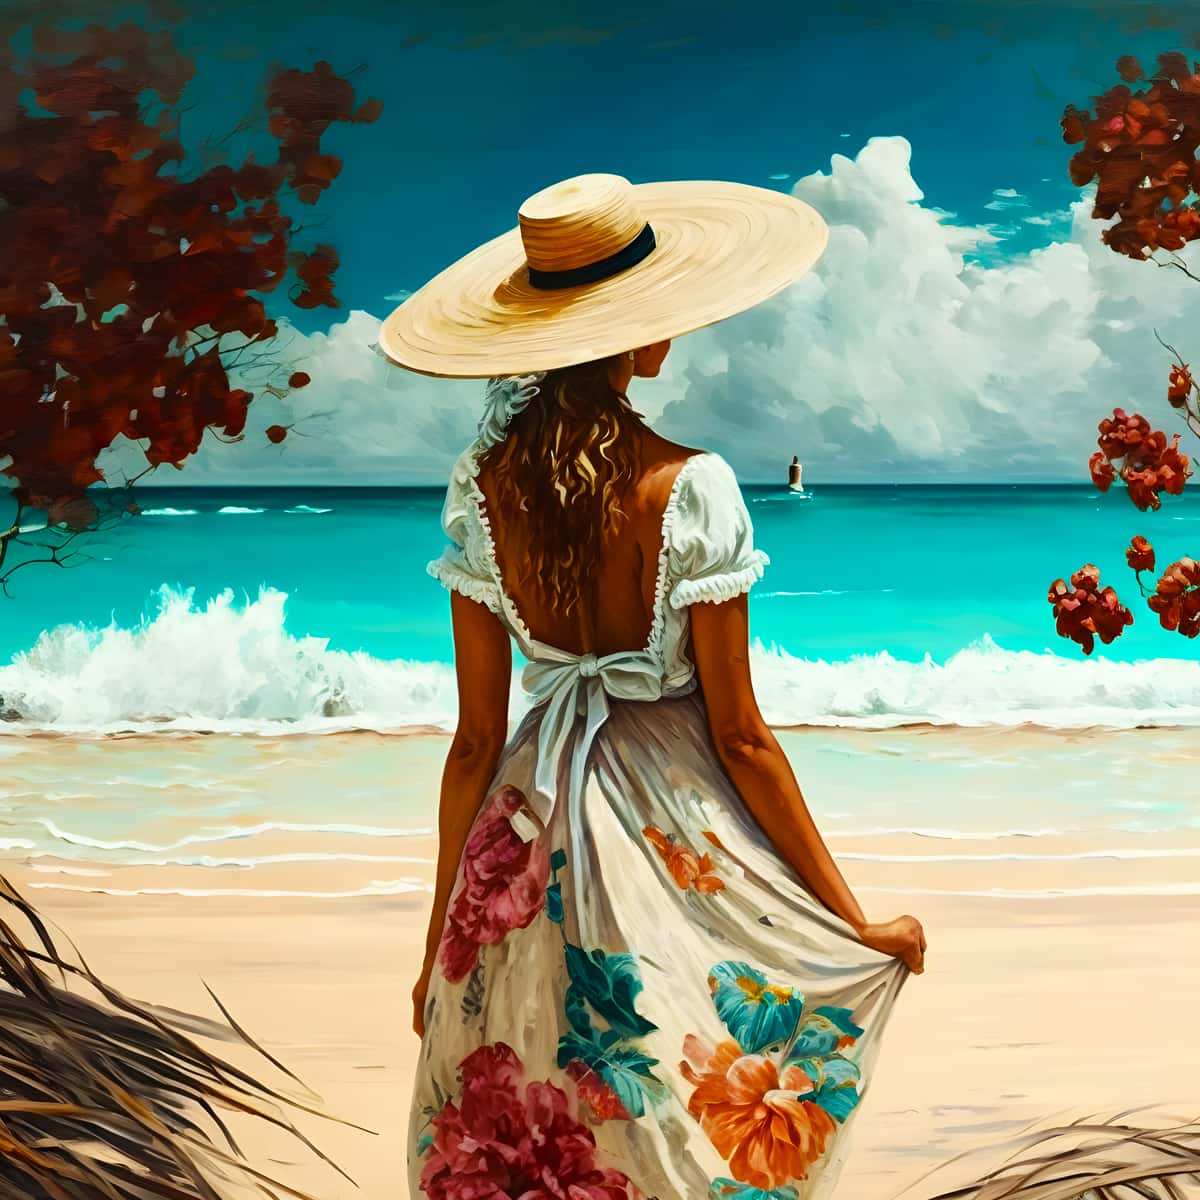 Diamond Painting - Frau mit Hut am Strand - gedruckt in Ultra-HD - Meer, Menschen, Neu eingetroffen, Quadratisch, Strand